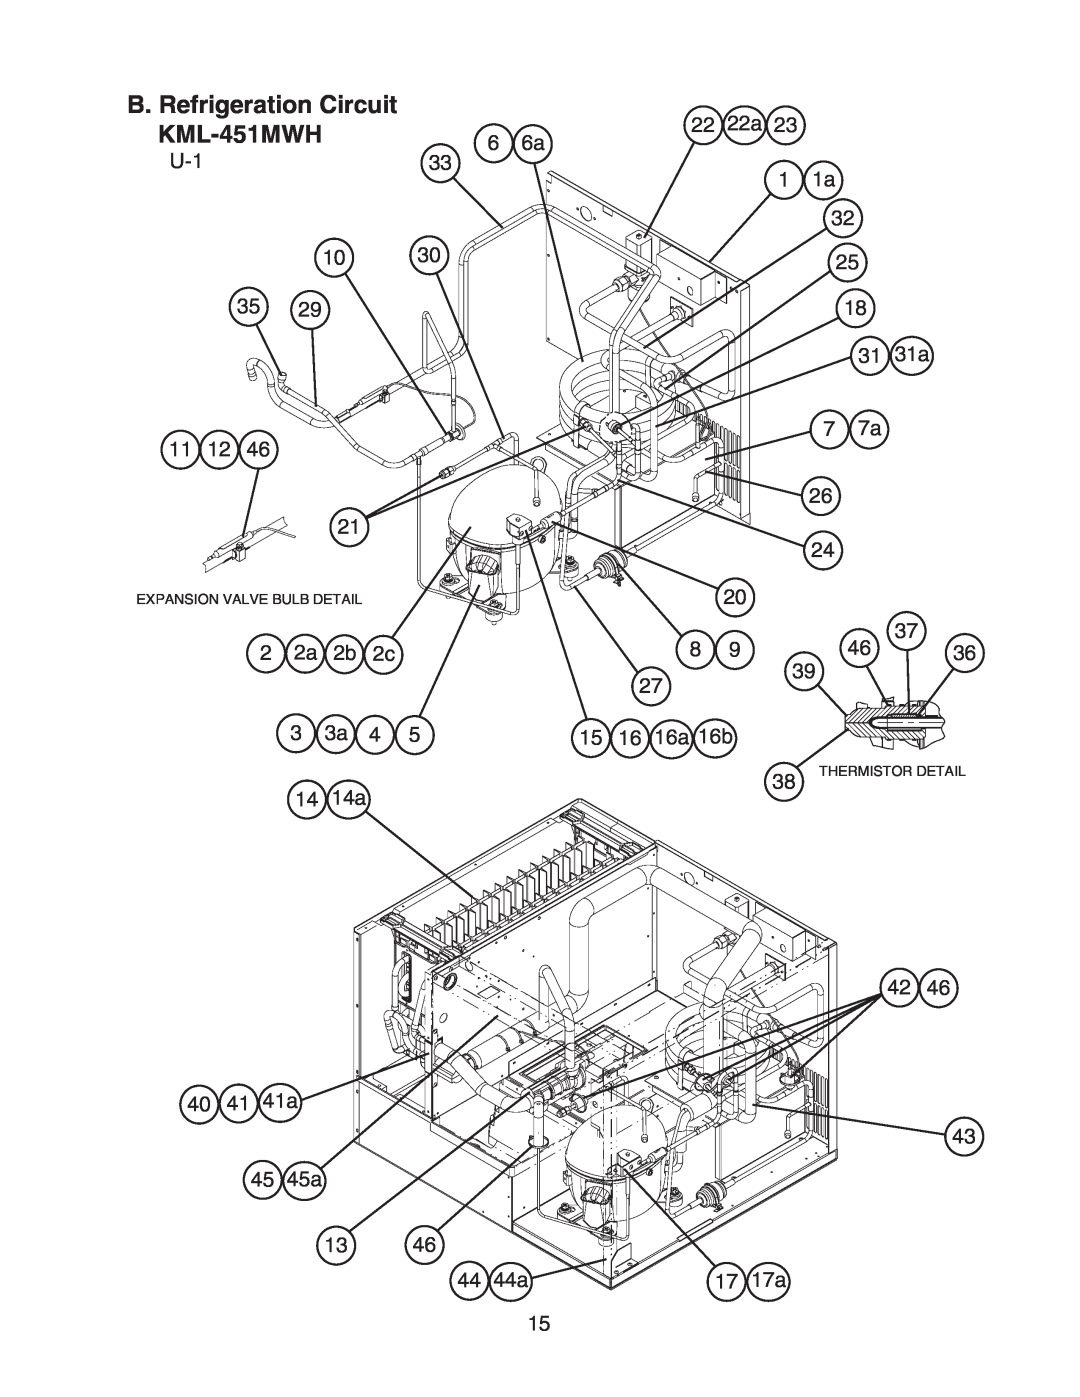 Hoshizaki KML-451MAH manual B. Refrigeration Circuit KML-451MWH, 40 41 41a 